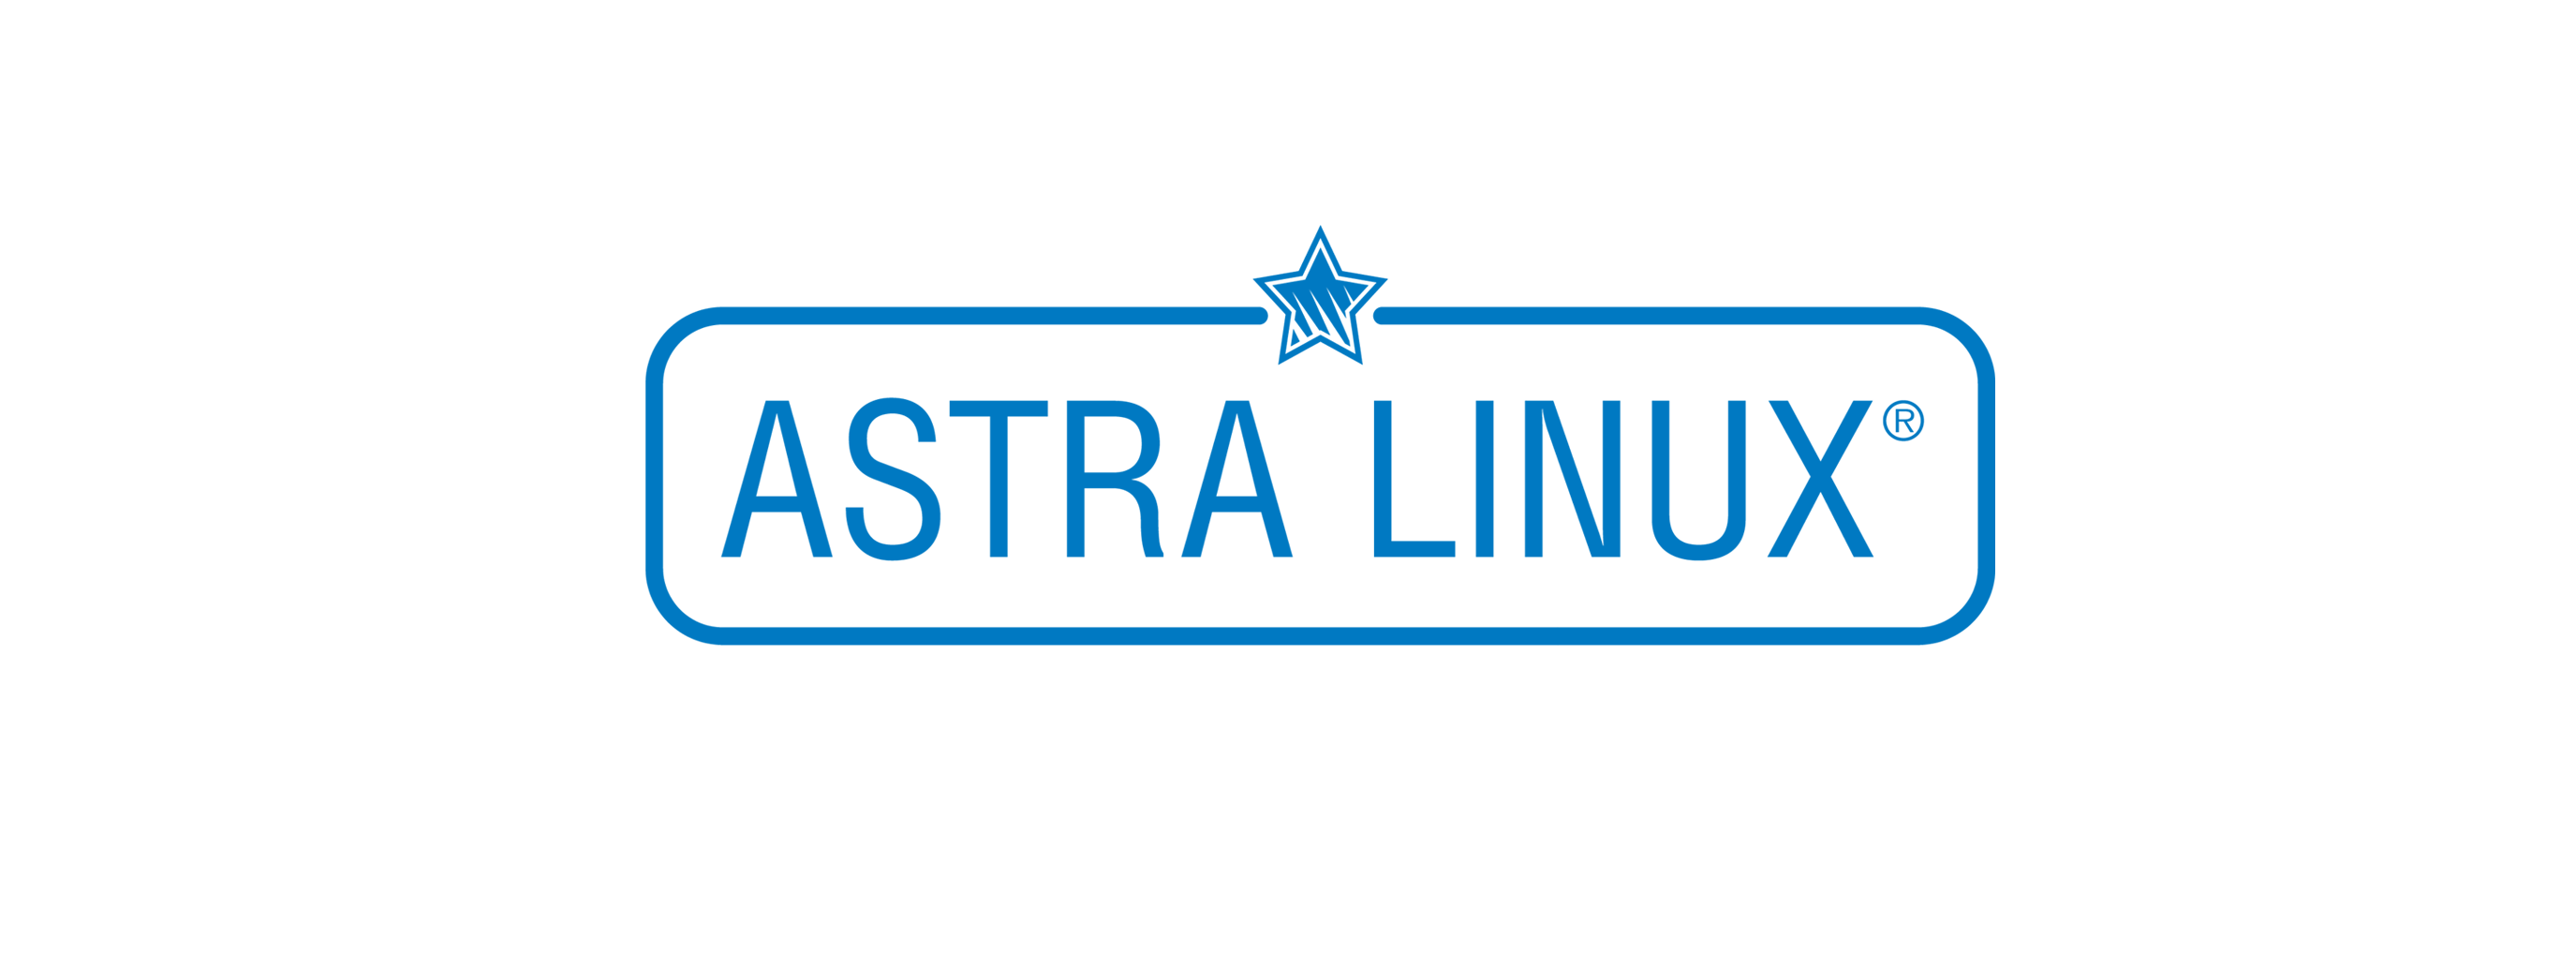 Лицензия РусБИТех Средства виртуализации Брест, РДЦП.10001-02, для Linux и Windows (Брест Корпоратив) и Astra Linux Special Edition РУСБ.10015-01 (ФСТЭК), Russian, на срок действия исключительного права базовая лицензия для сервера до 2 сокетов и неограниченного количества виртуальных машин под управлением Astra Linux Special Edition, запущенных на данном сервере, электронный ключ (BR2100X8631DIGCUVSV01-SO12)